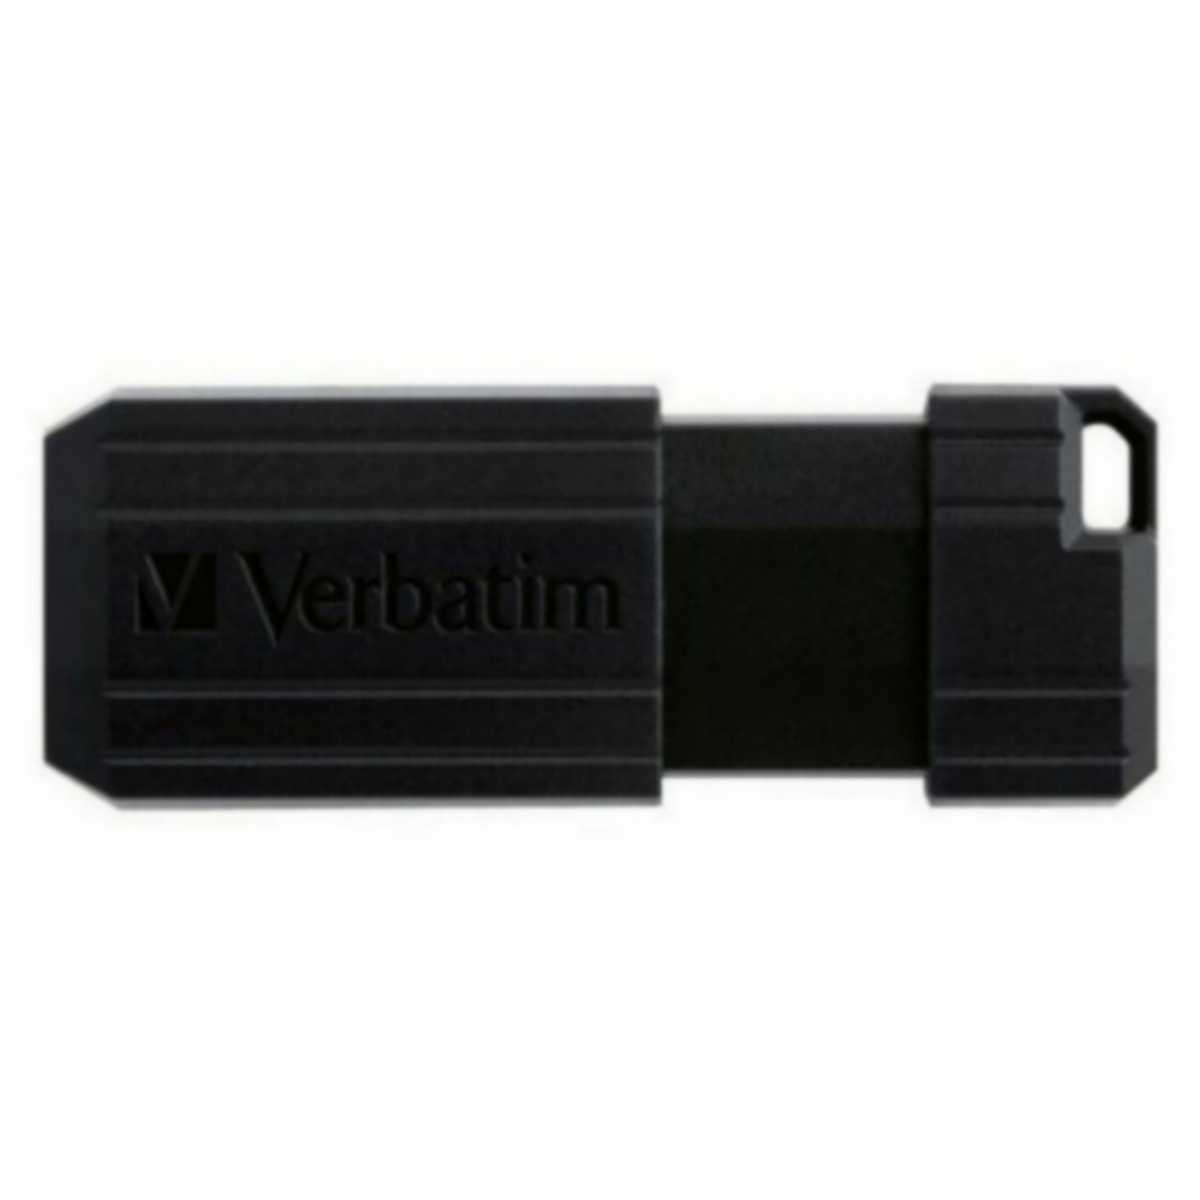 スライド式USBメモリー64GB(三Verbatim)USBP64GVZ2【1円スタート出品・新品・送料無料】_画像2